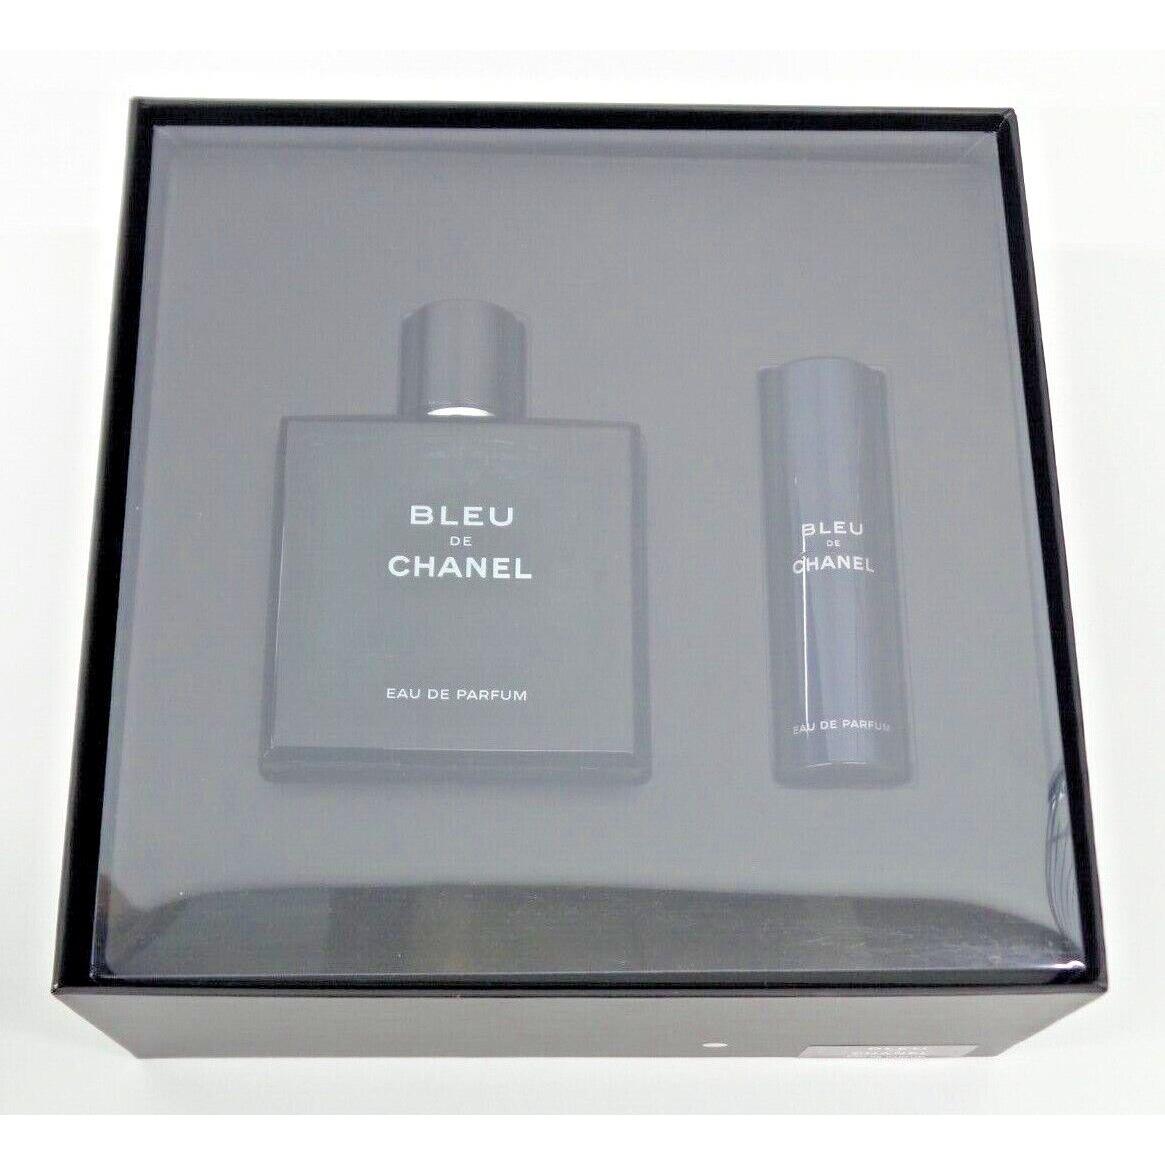 Chanel Bleu de Chanel Coffret Signature Box 2 Piece Parfum Set 3.4fl oz - J750